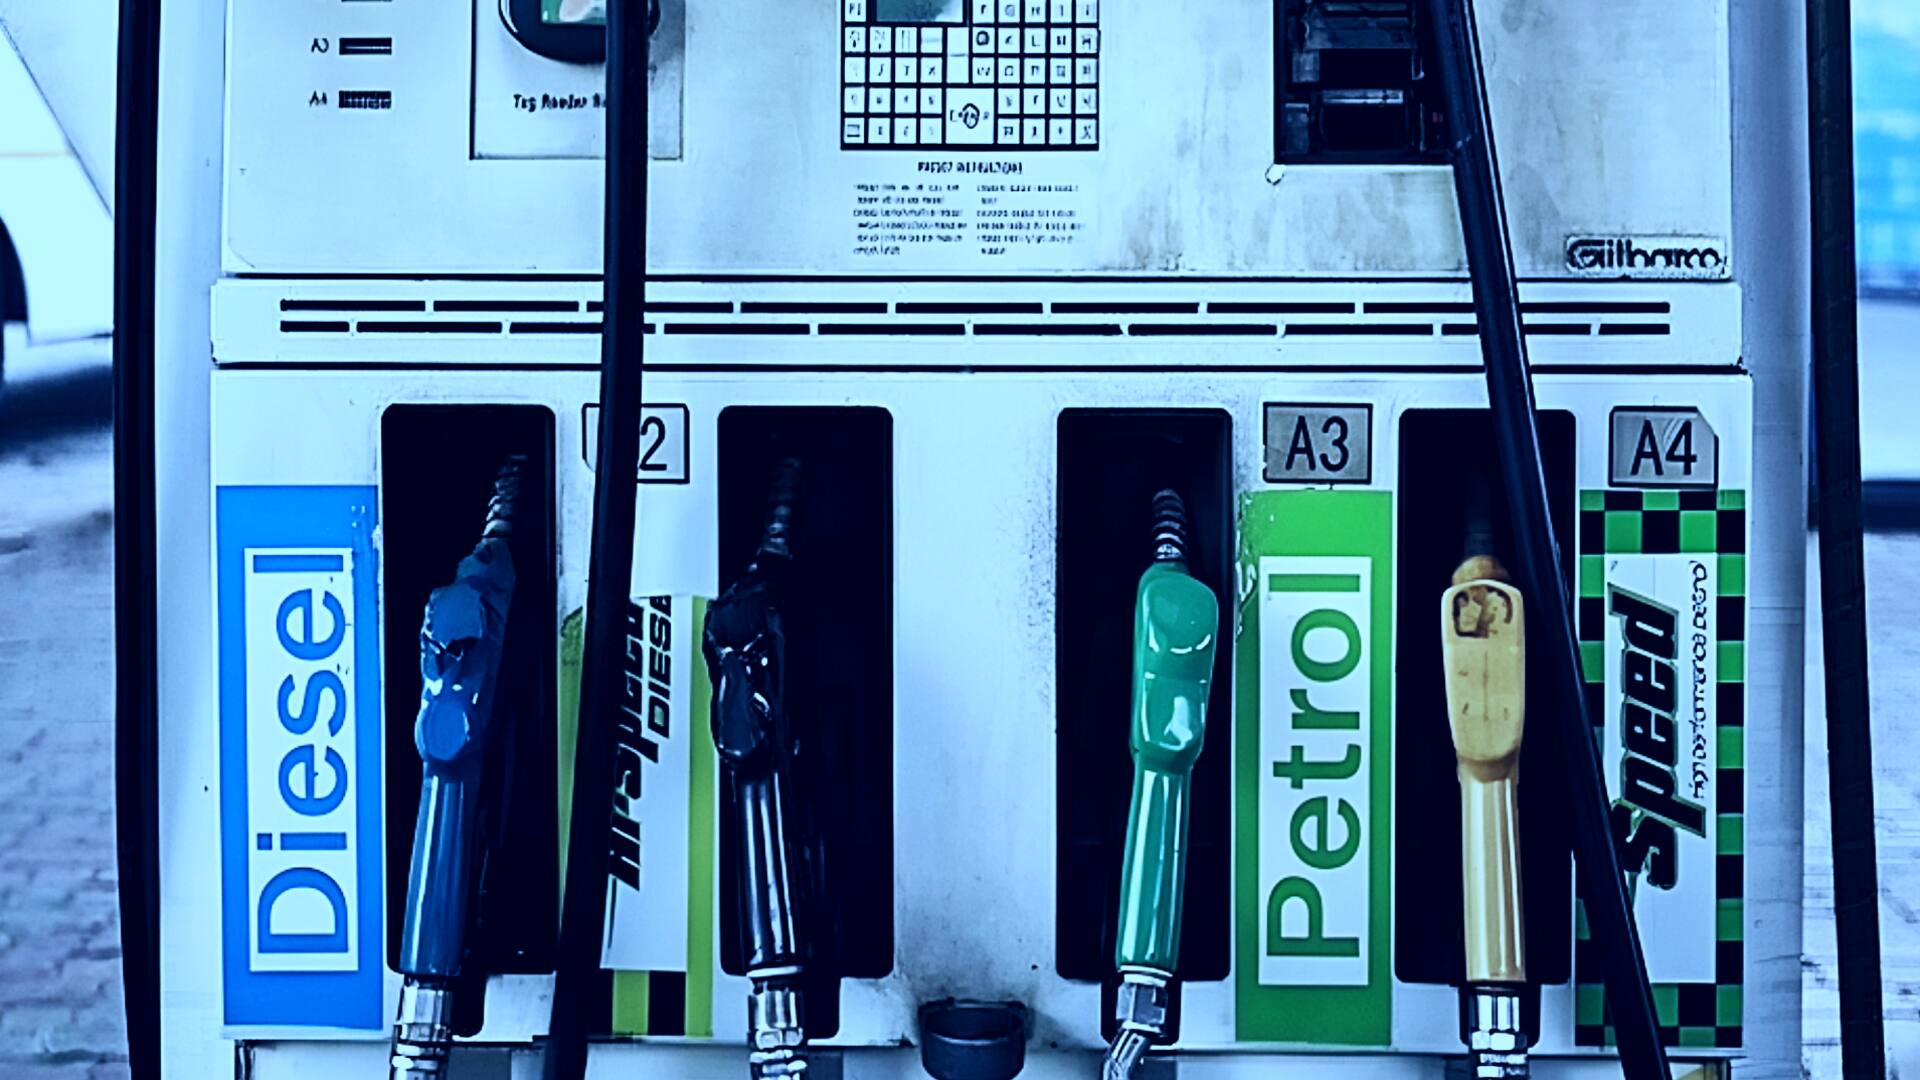 पेट्रोल-डीजल की कीमतें: 1 जनवरी को नए दाम जारी, जानिए कहां-कितने बदले 